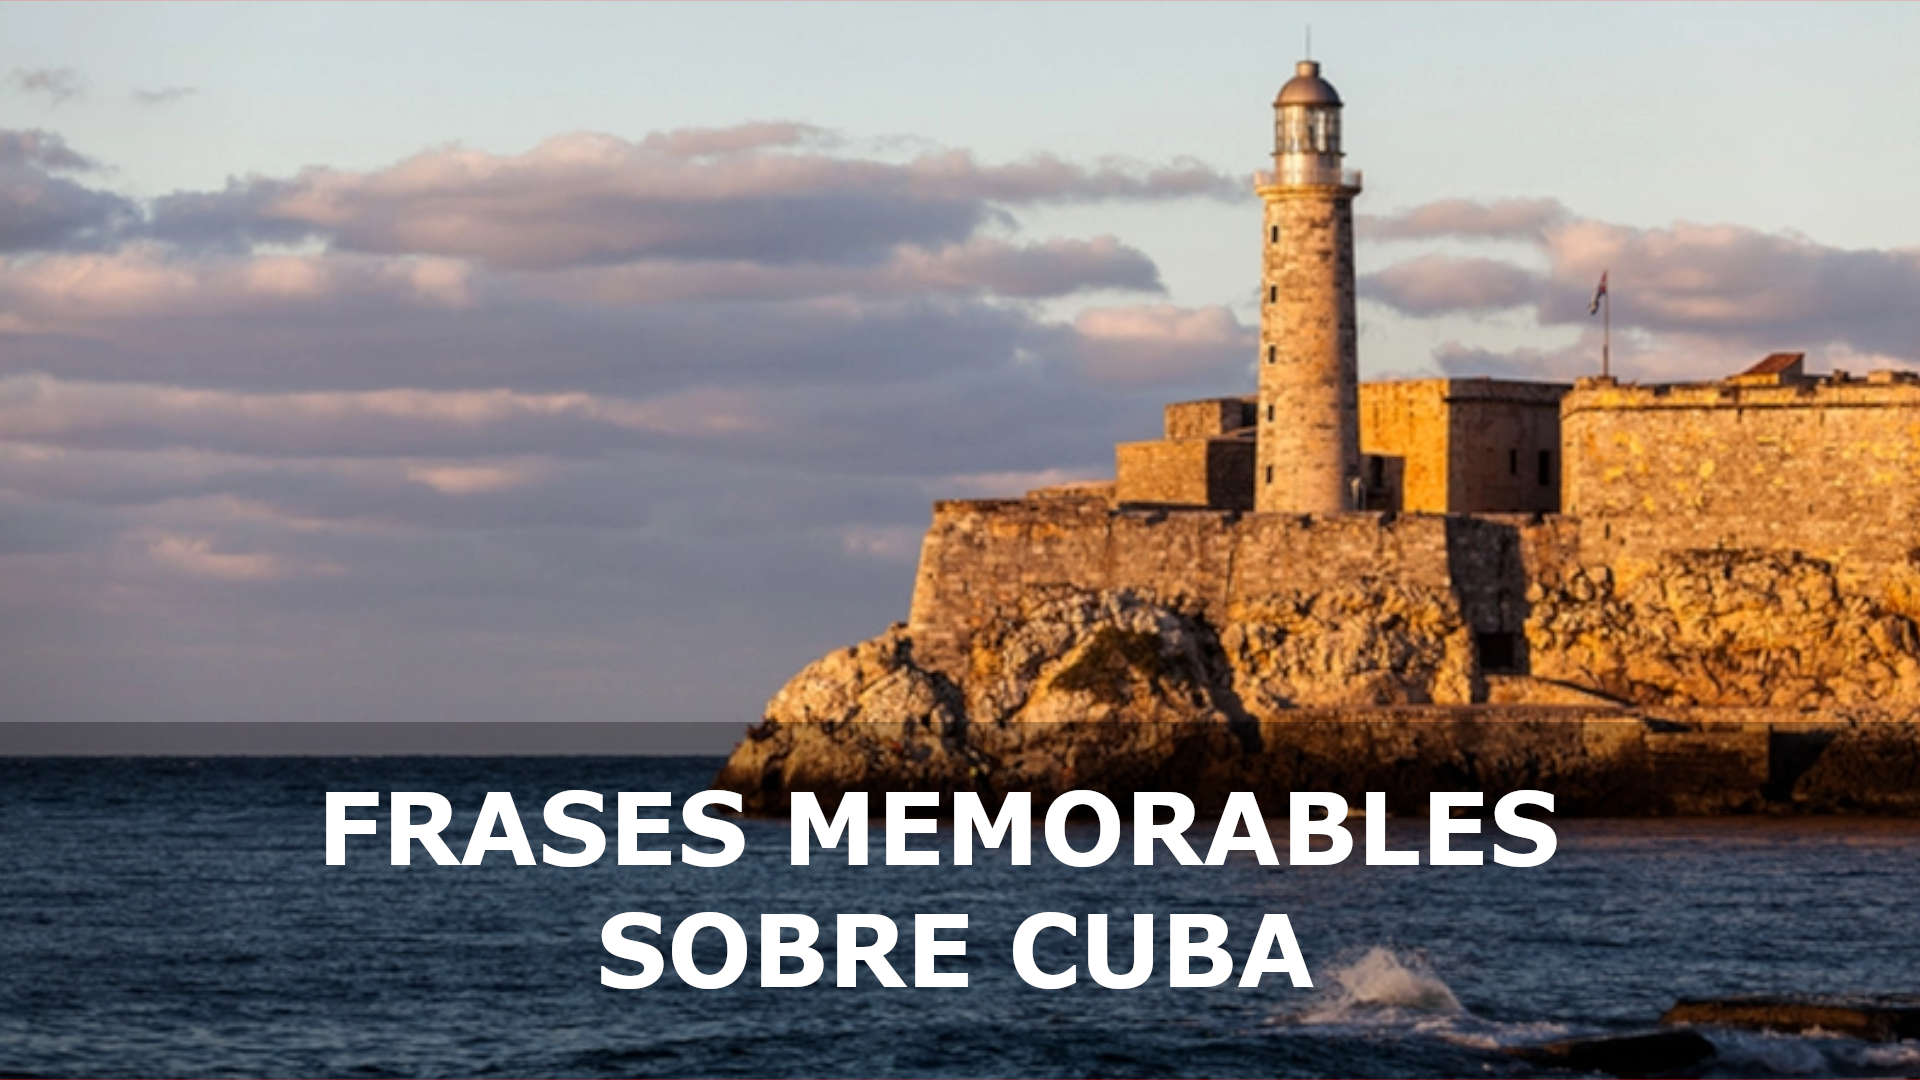 FRASES MEMORABLES SOBRE CUBA